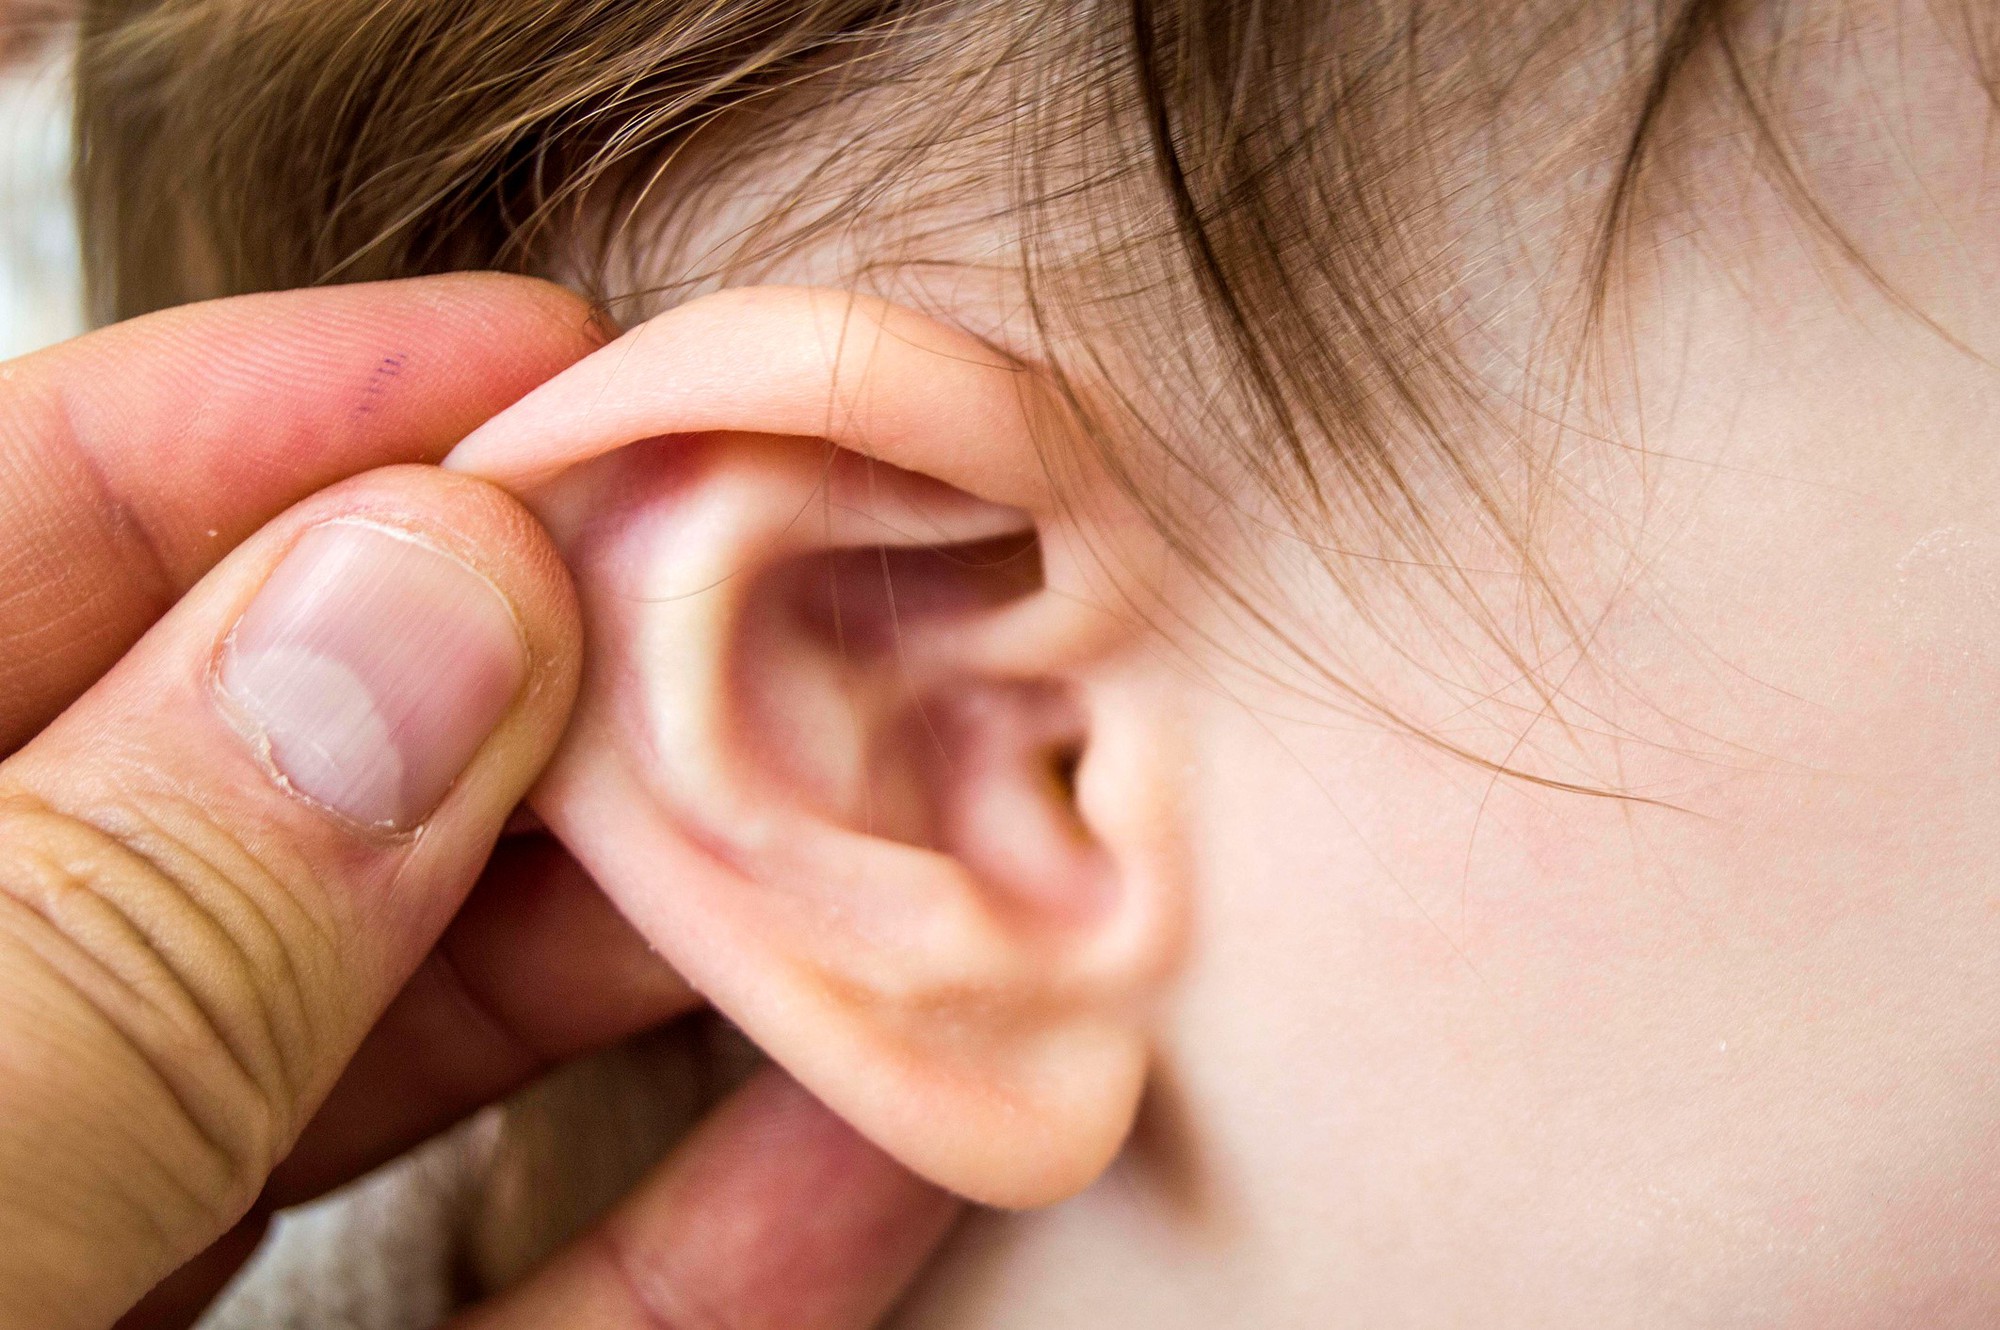 Đeo tai nghe nhiều có những ảnh hưởng tiêu cực ra sao? Sau đây là câu trả lời cho bạn - Ảnh 5.